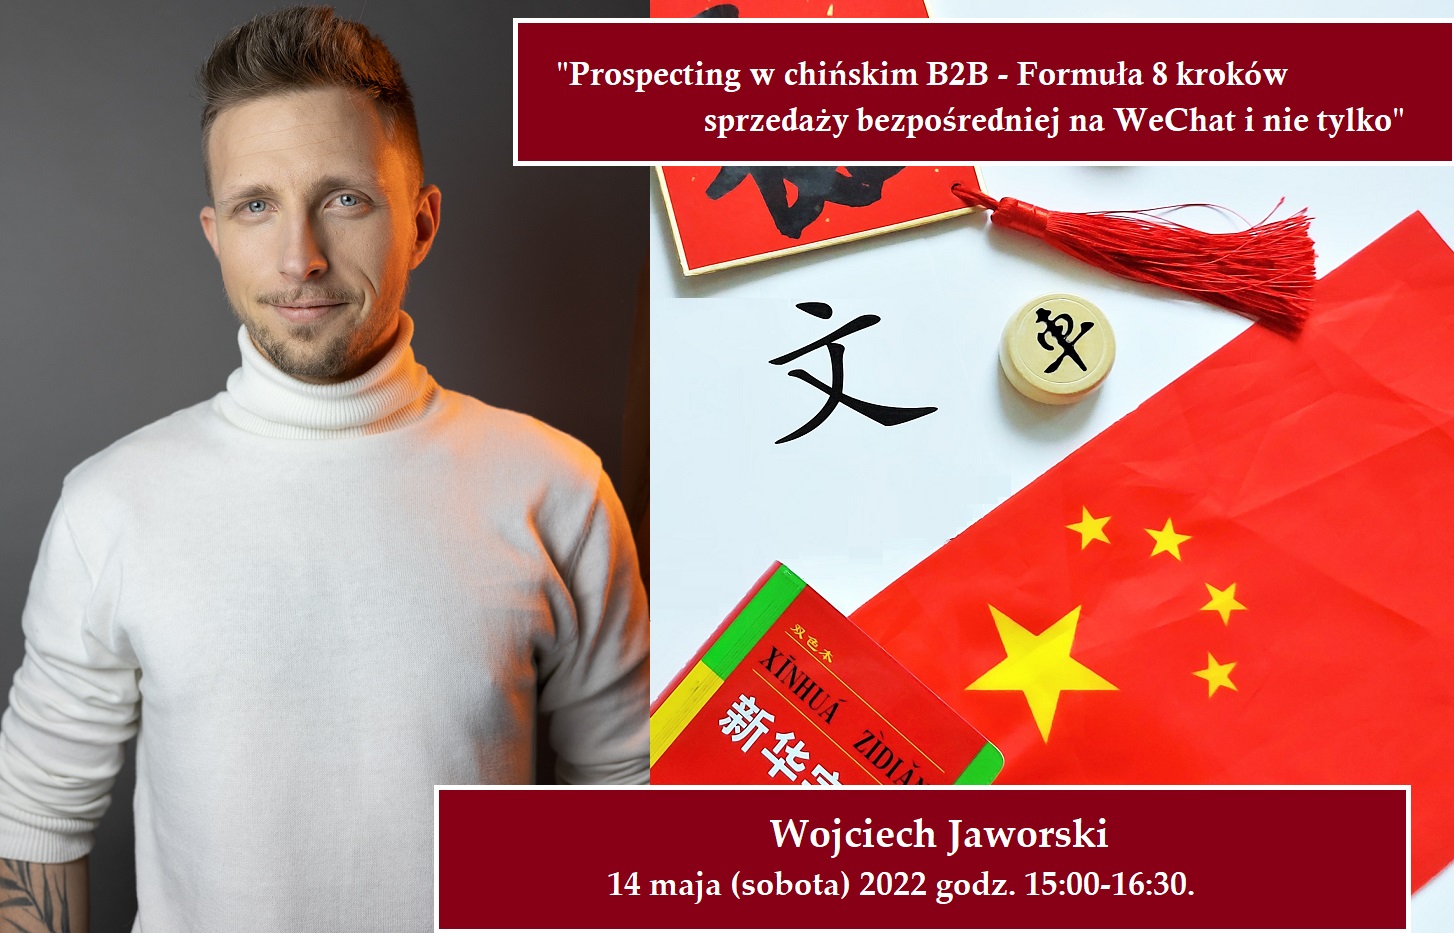 warsztaty wojciech jaworski - Warsztaty "Prospecting w chińskim B2B" - Wojciech Jaworski